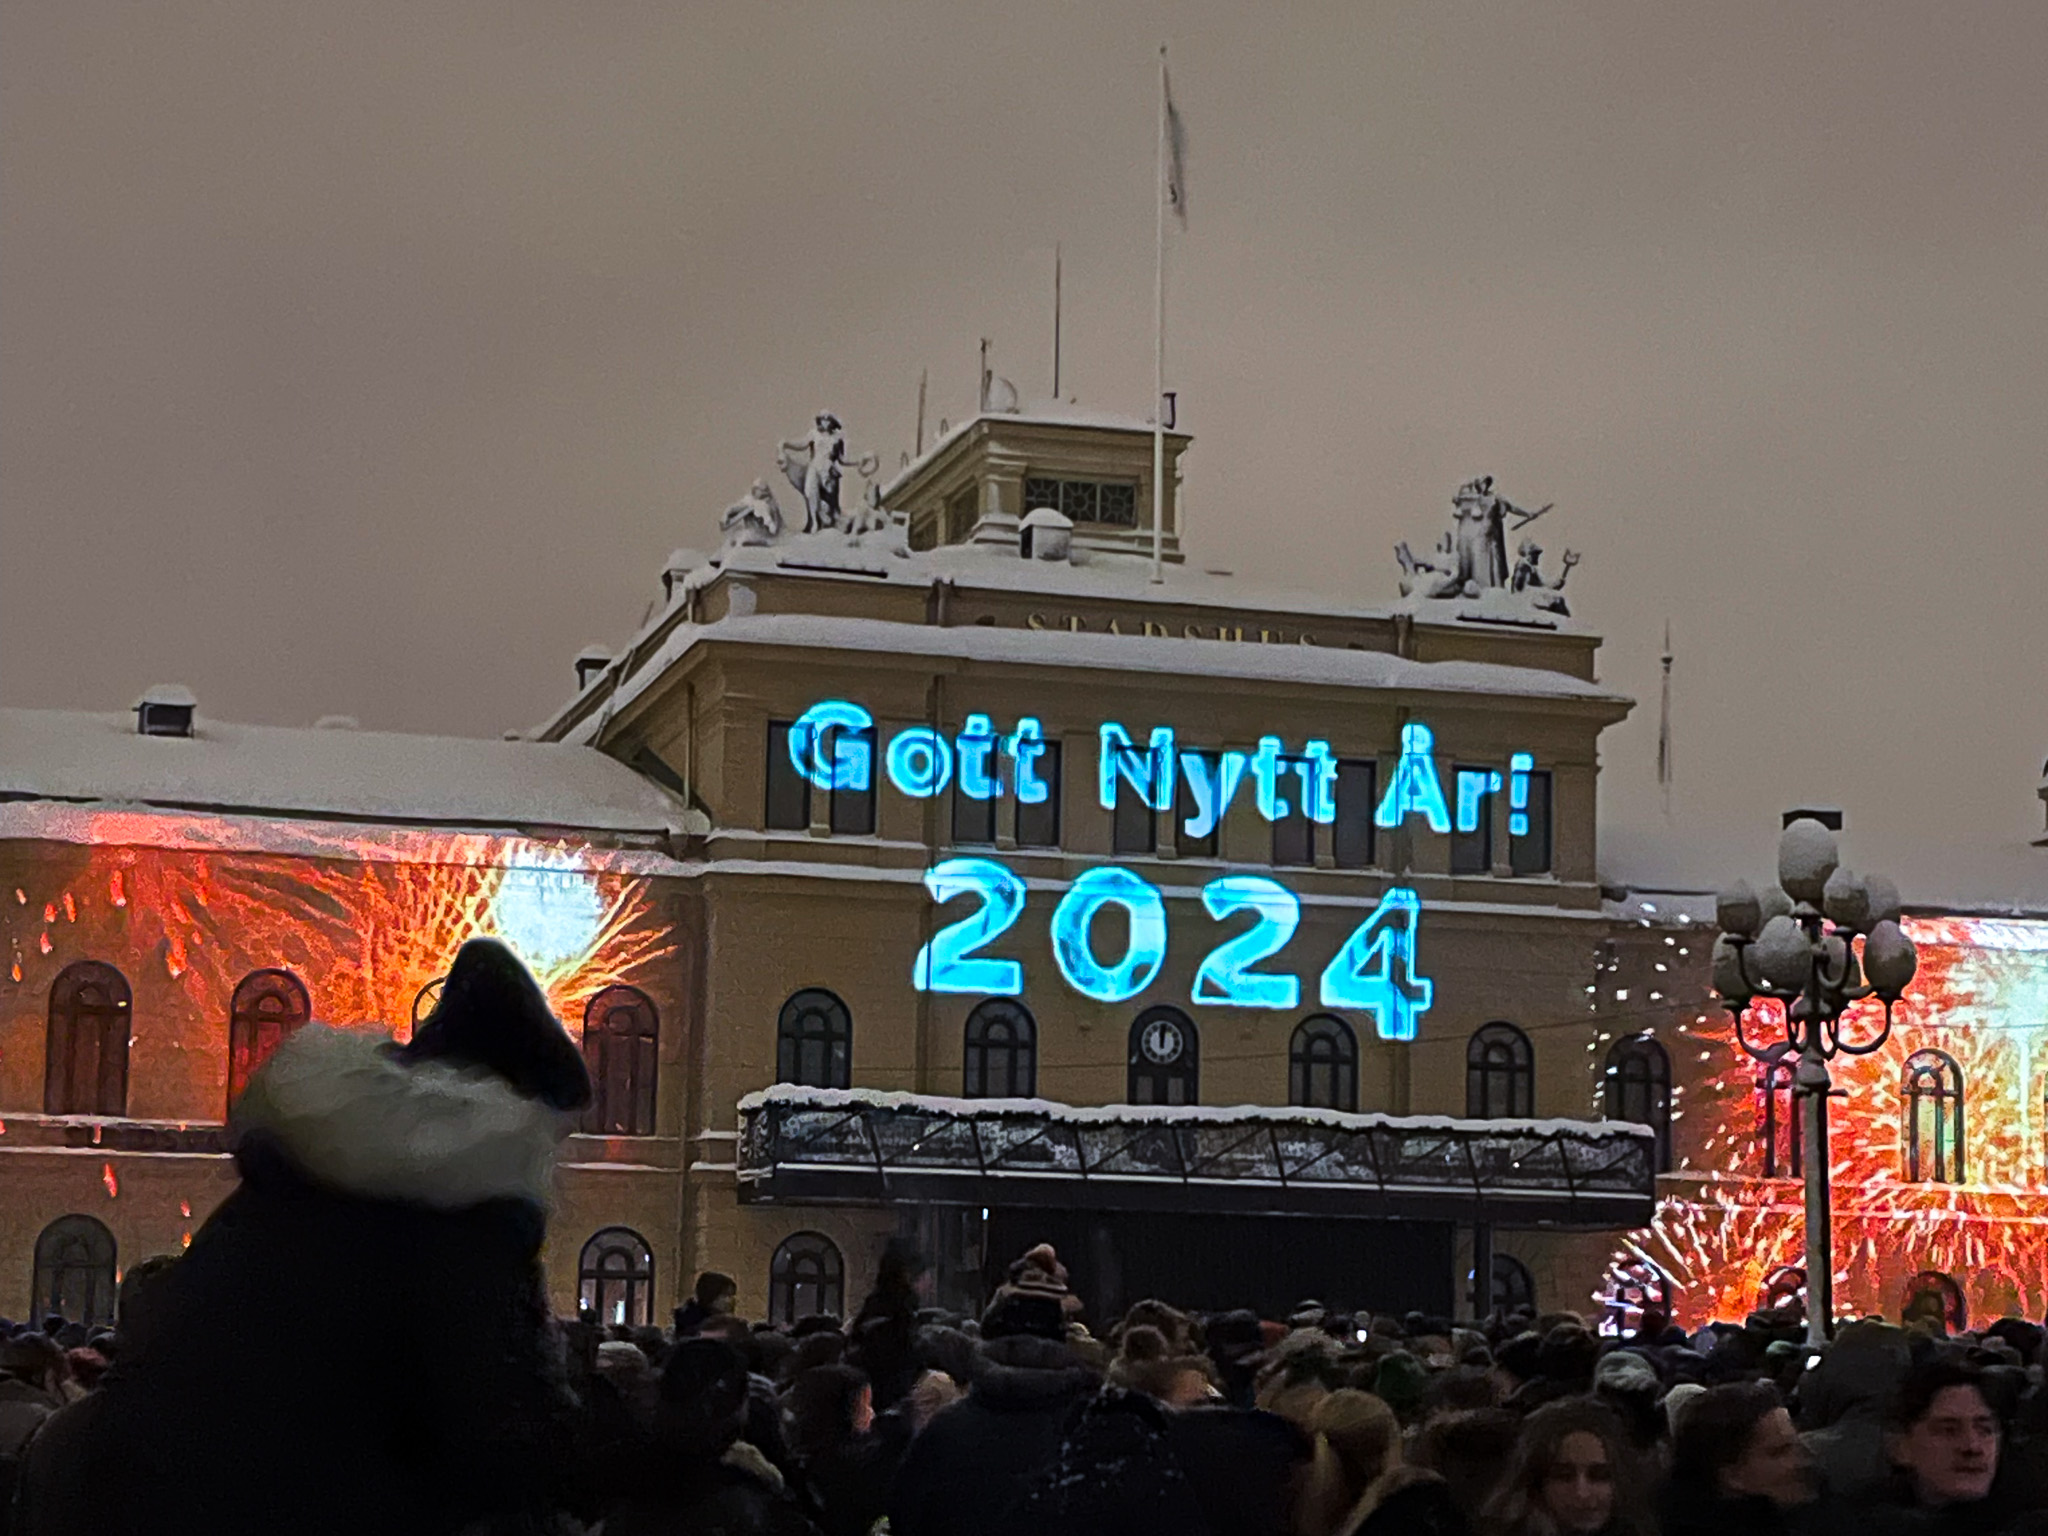 Det är många människor framför stadshuset. På Stadshusets fasad står det "Gott nytt år 2024".